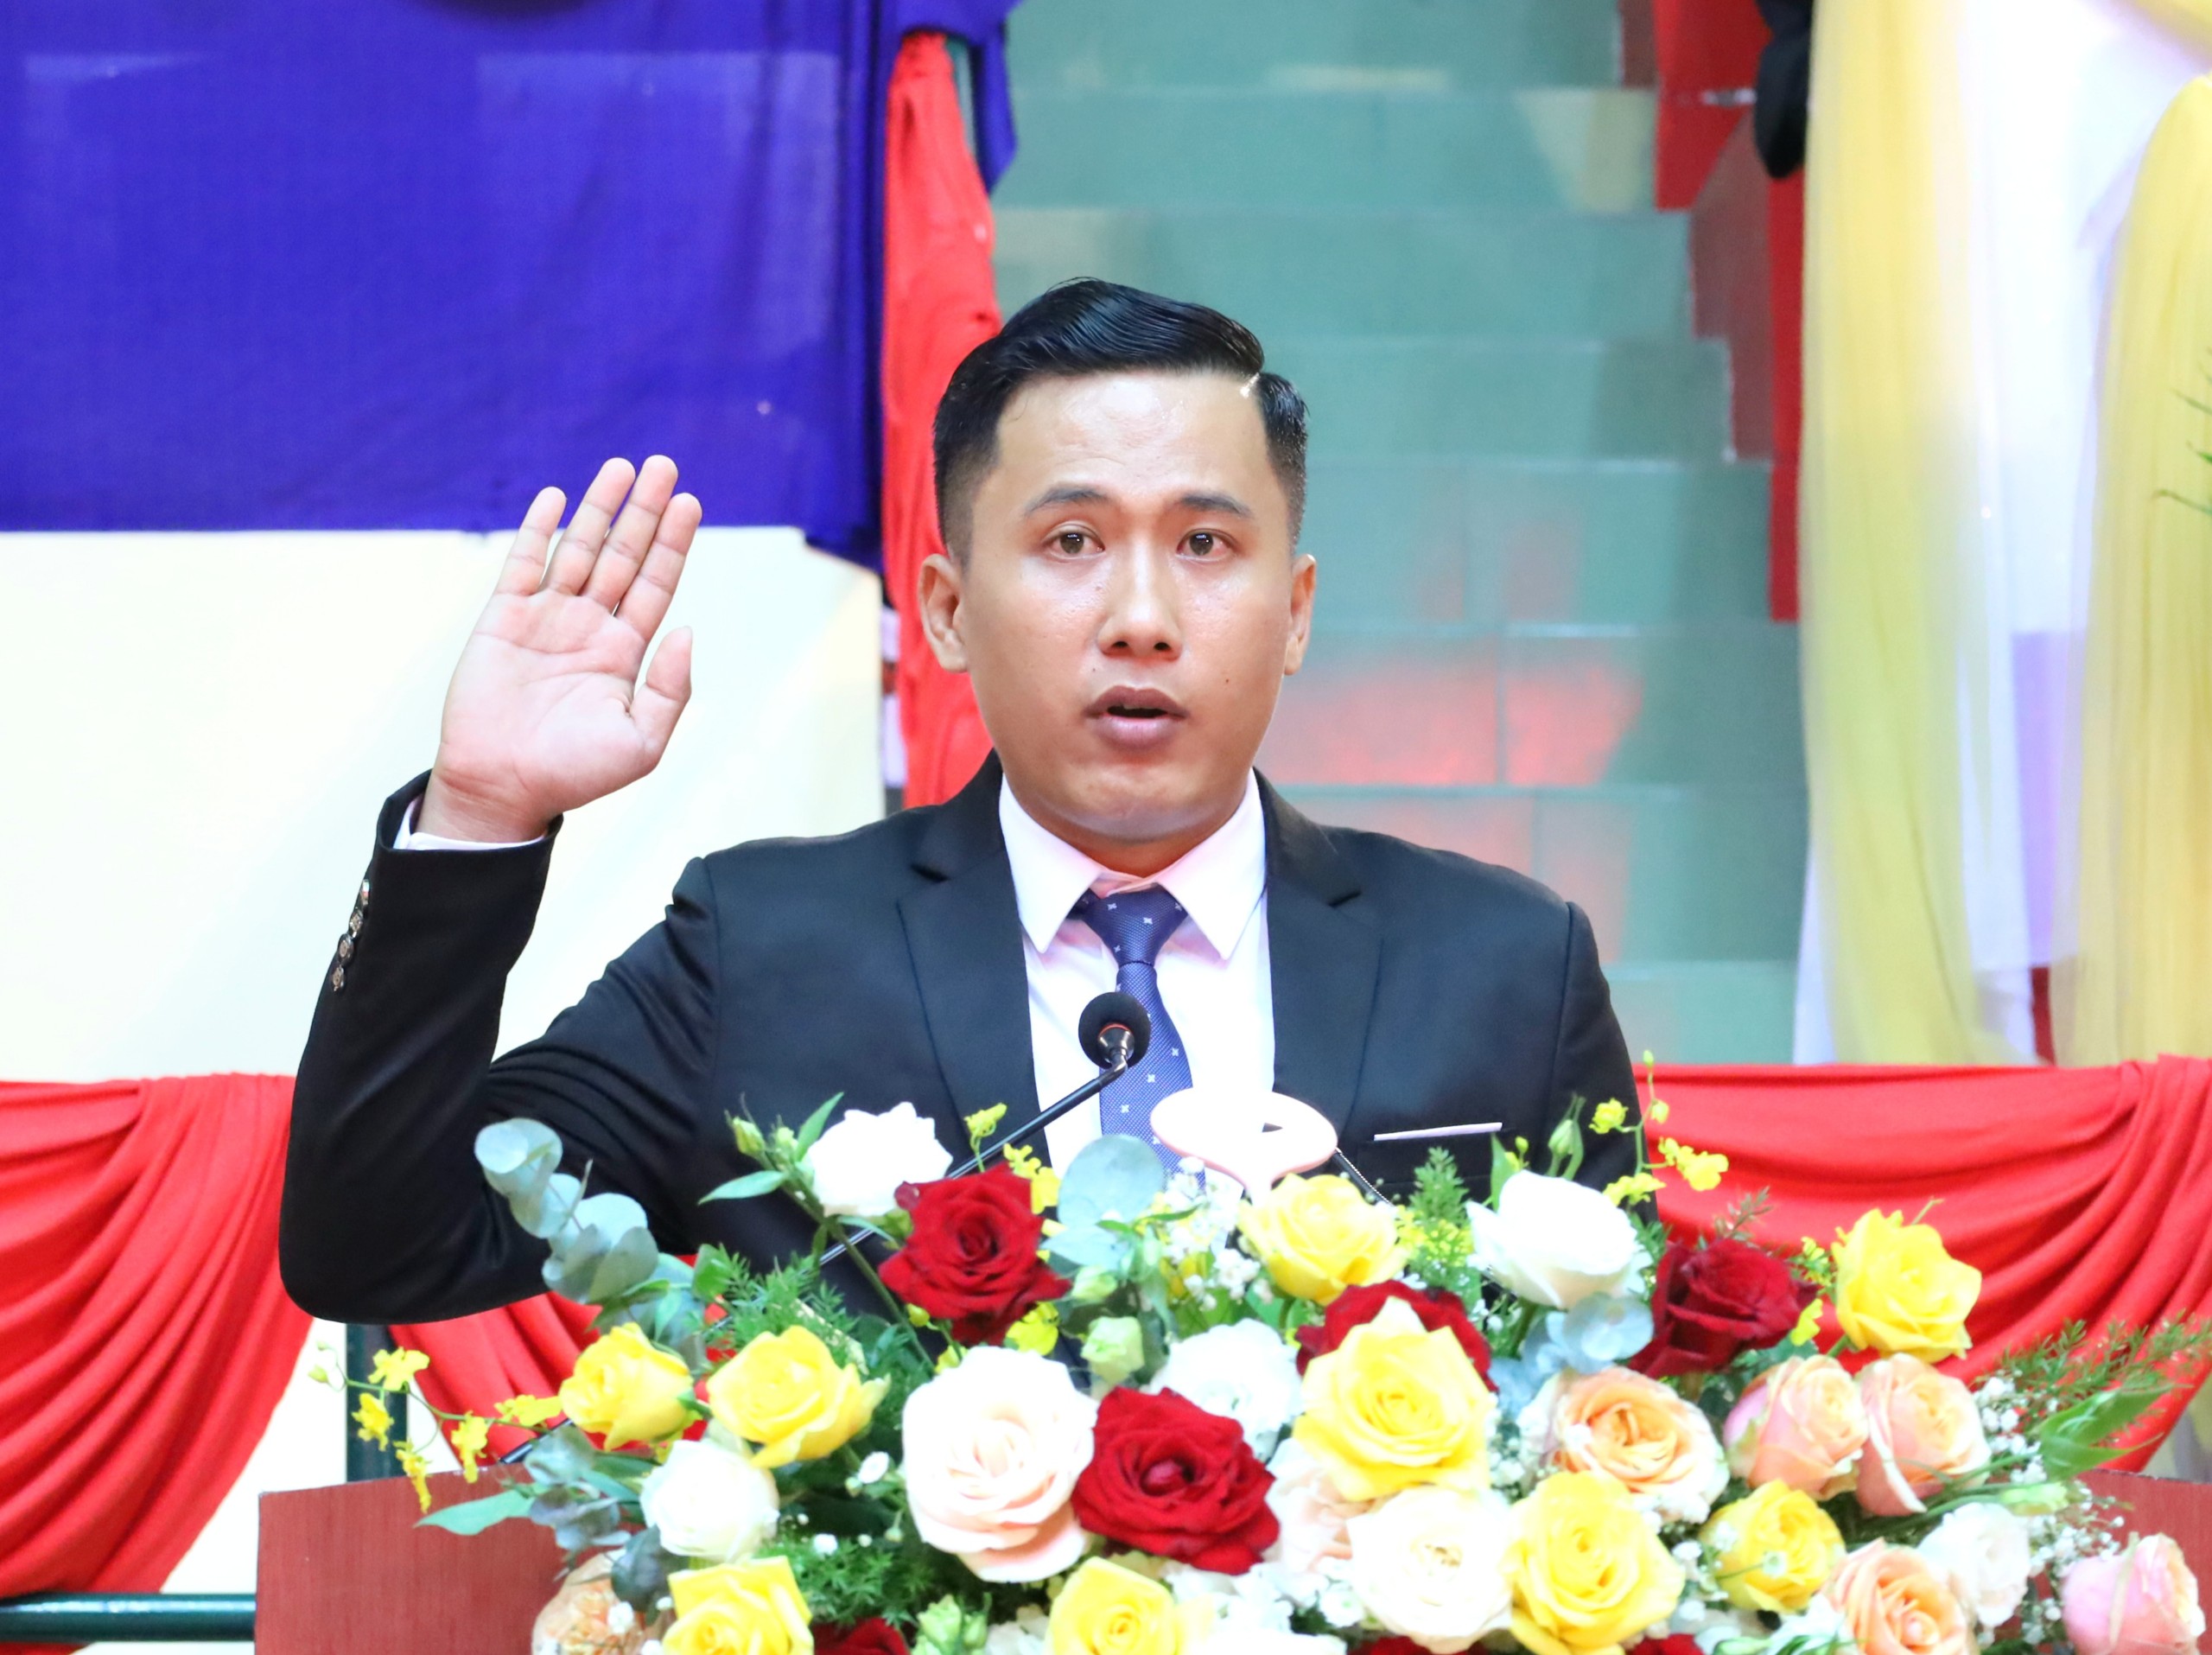 Trọng tài Trần Phước Thọ thay mặt trọng tài điều hành các môn thi đấu phát biểu tuyên thệ.